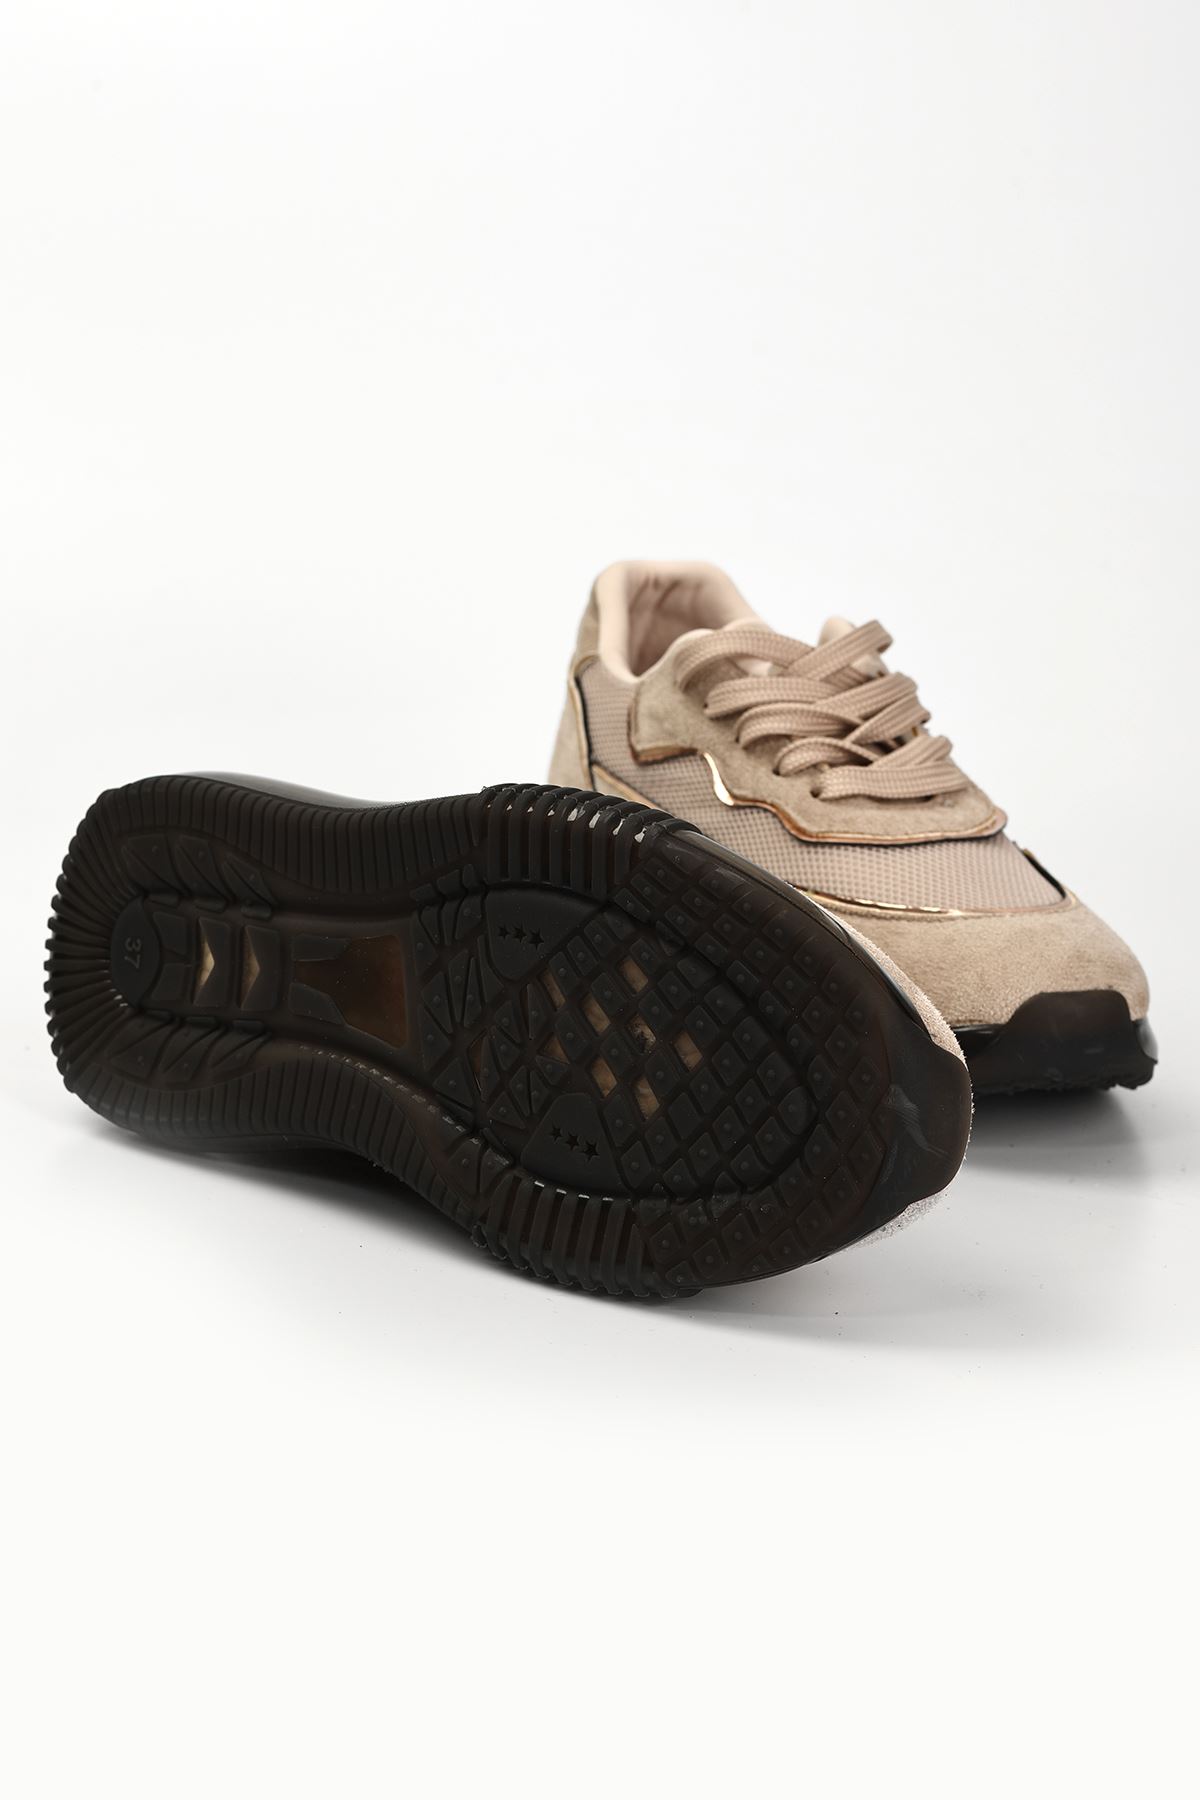 Ernox Hava Taban Detaylı Bağcıklı Kadın Spor Ayakkabı Vizon Süet